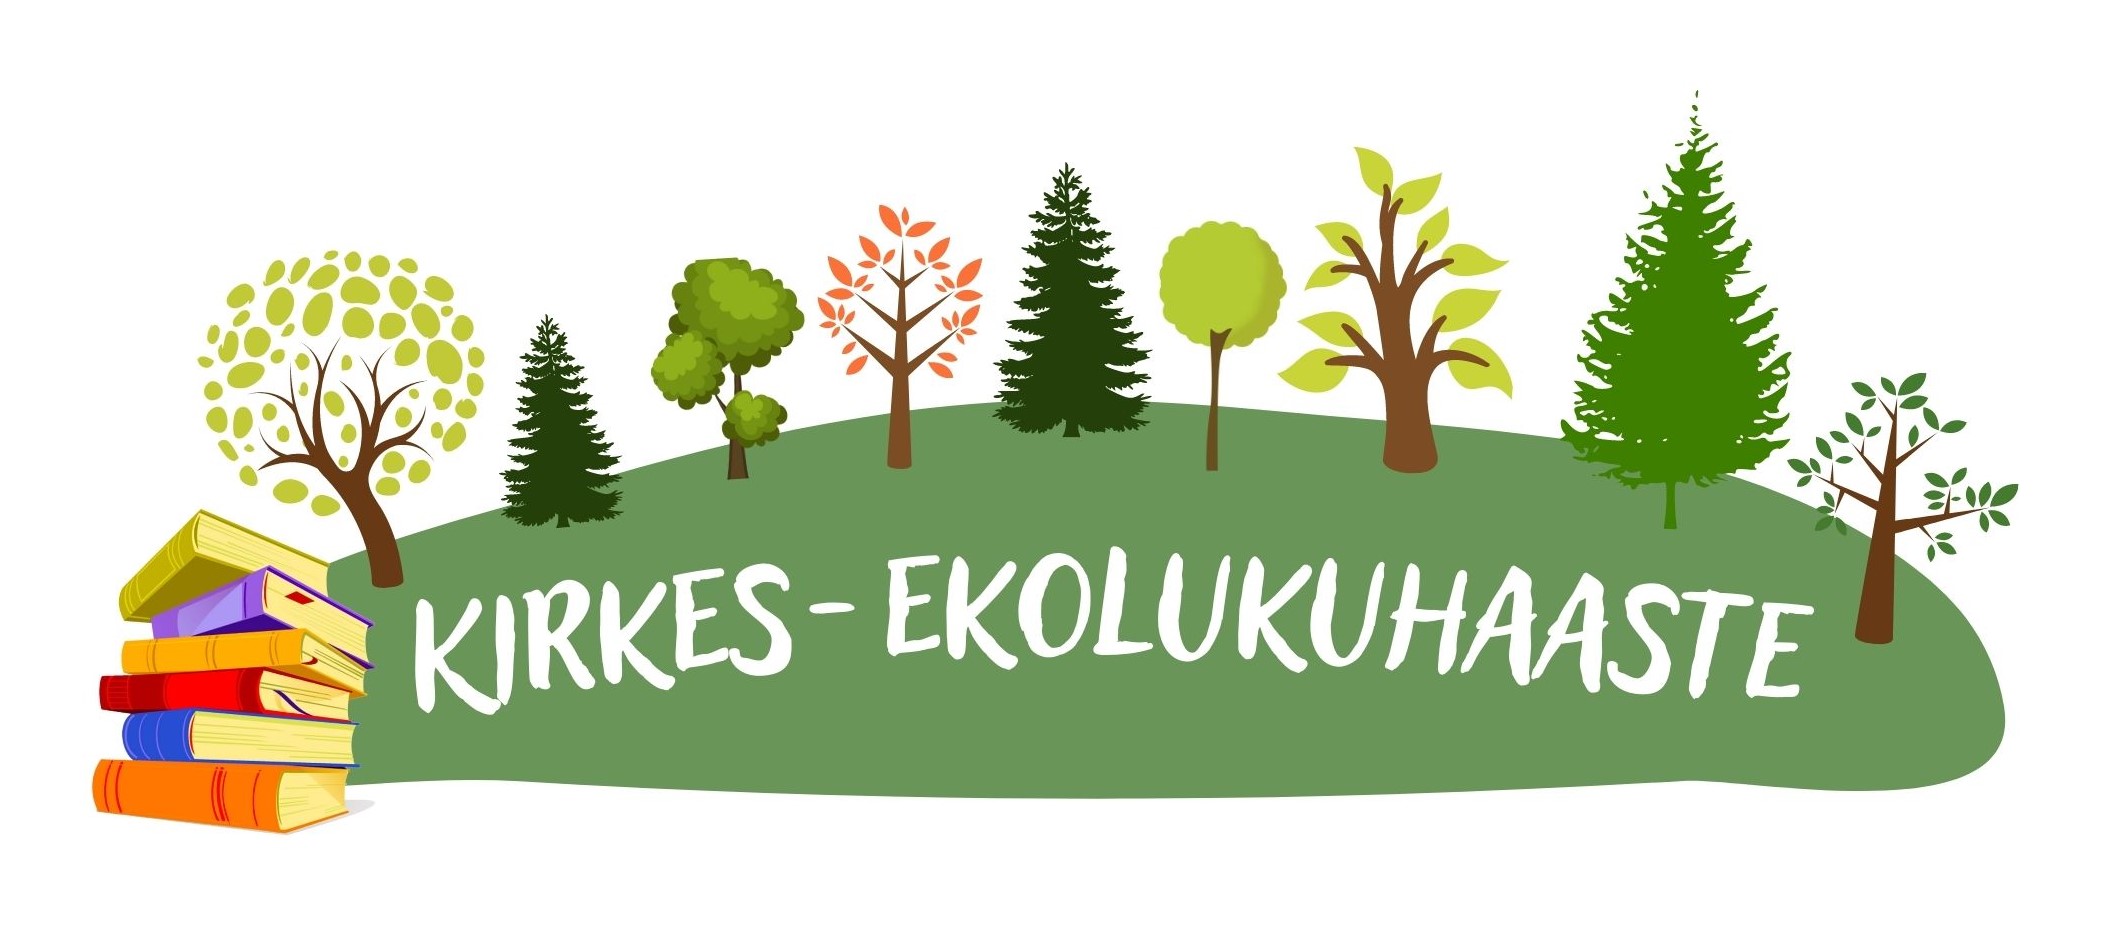 Kirkes-ekolukuhaasteen logo. Vihreäsävyisessä logossa on piirrettyjä puita ja pino kirjoja.